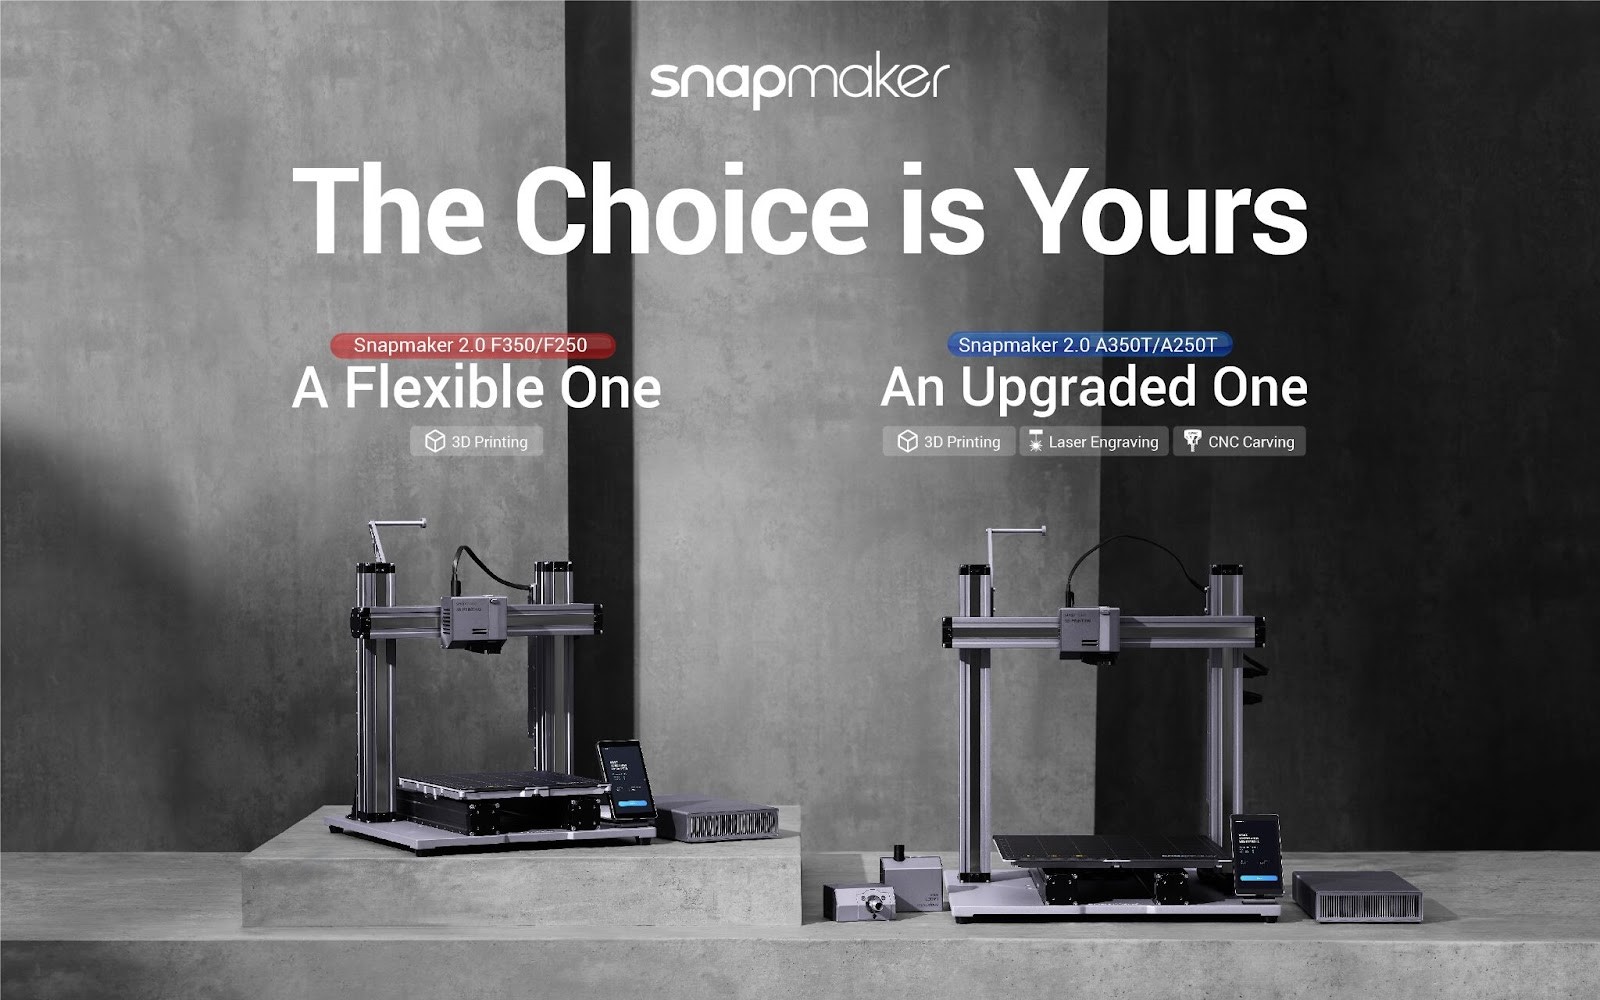 Les nouveaux modèles 2.0 AT et F de Snapmaker.  Image via Snapmaker.